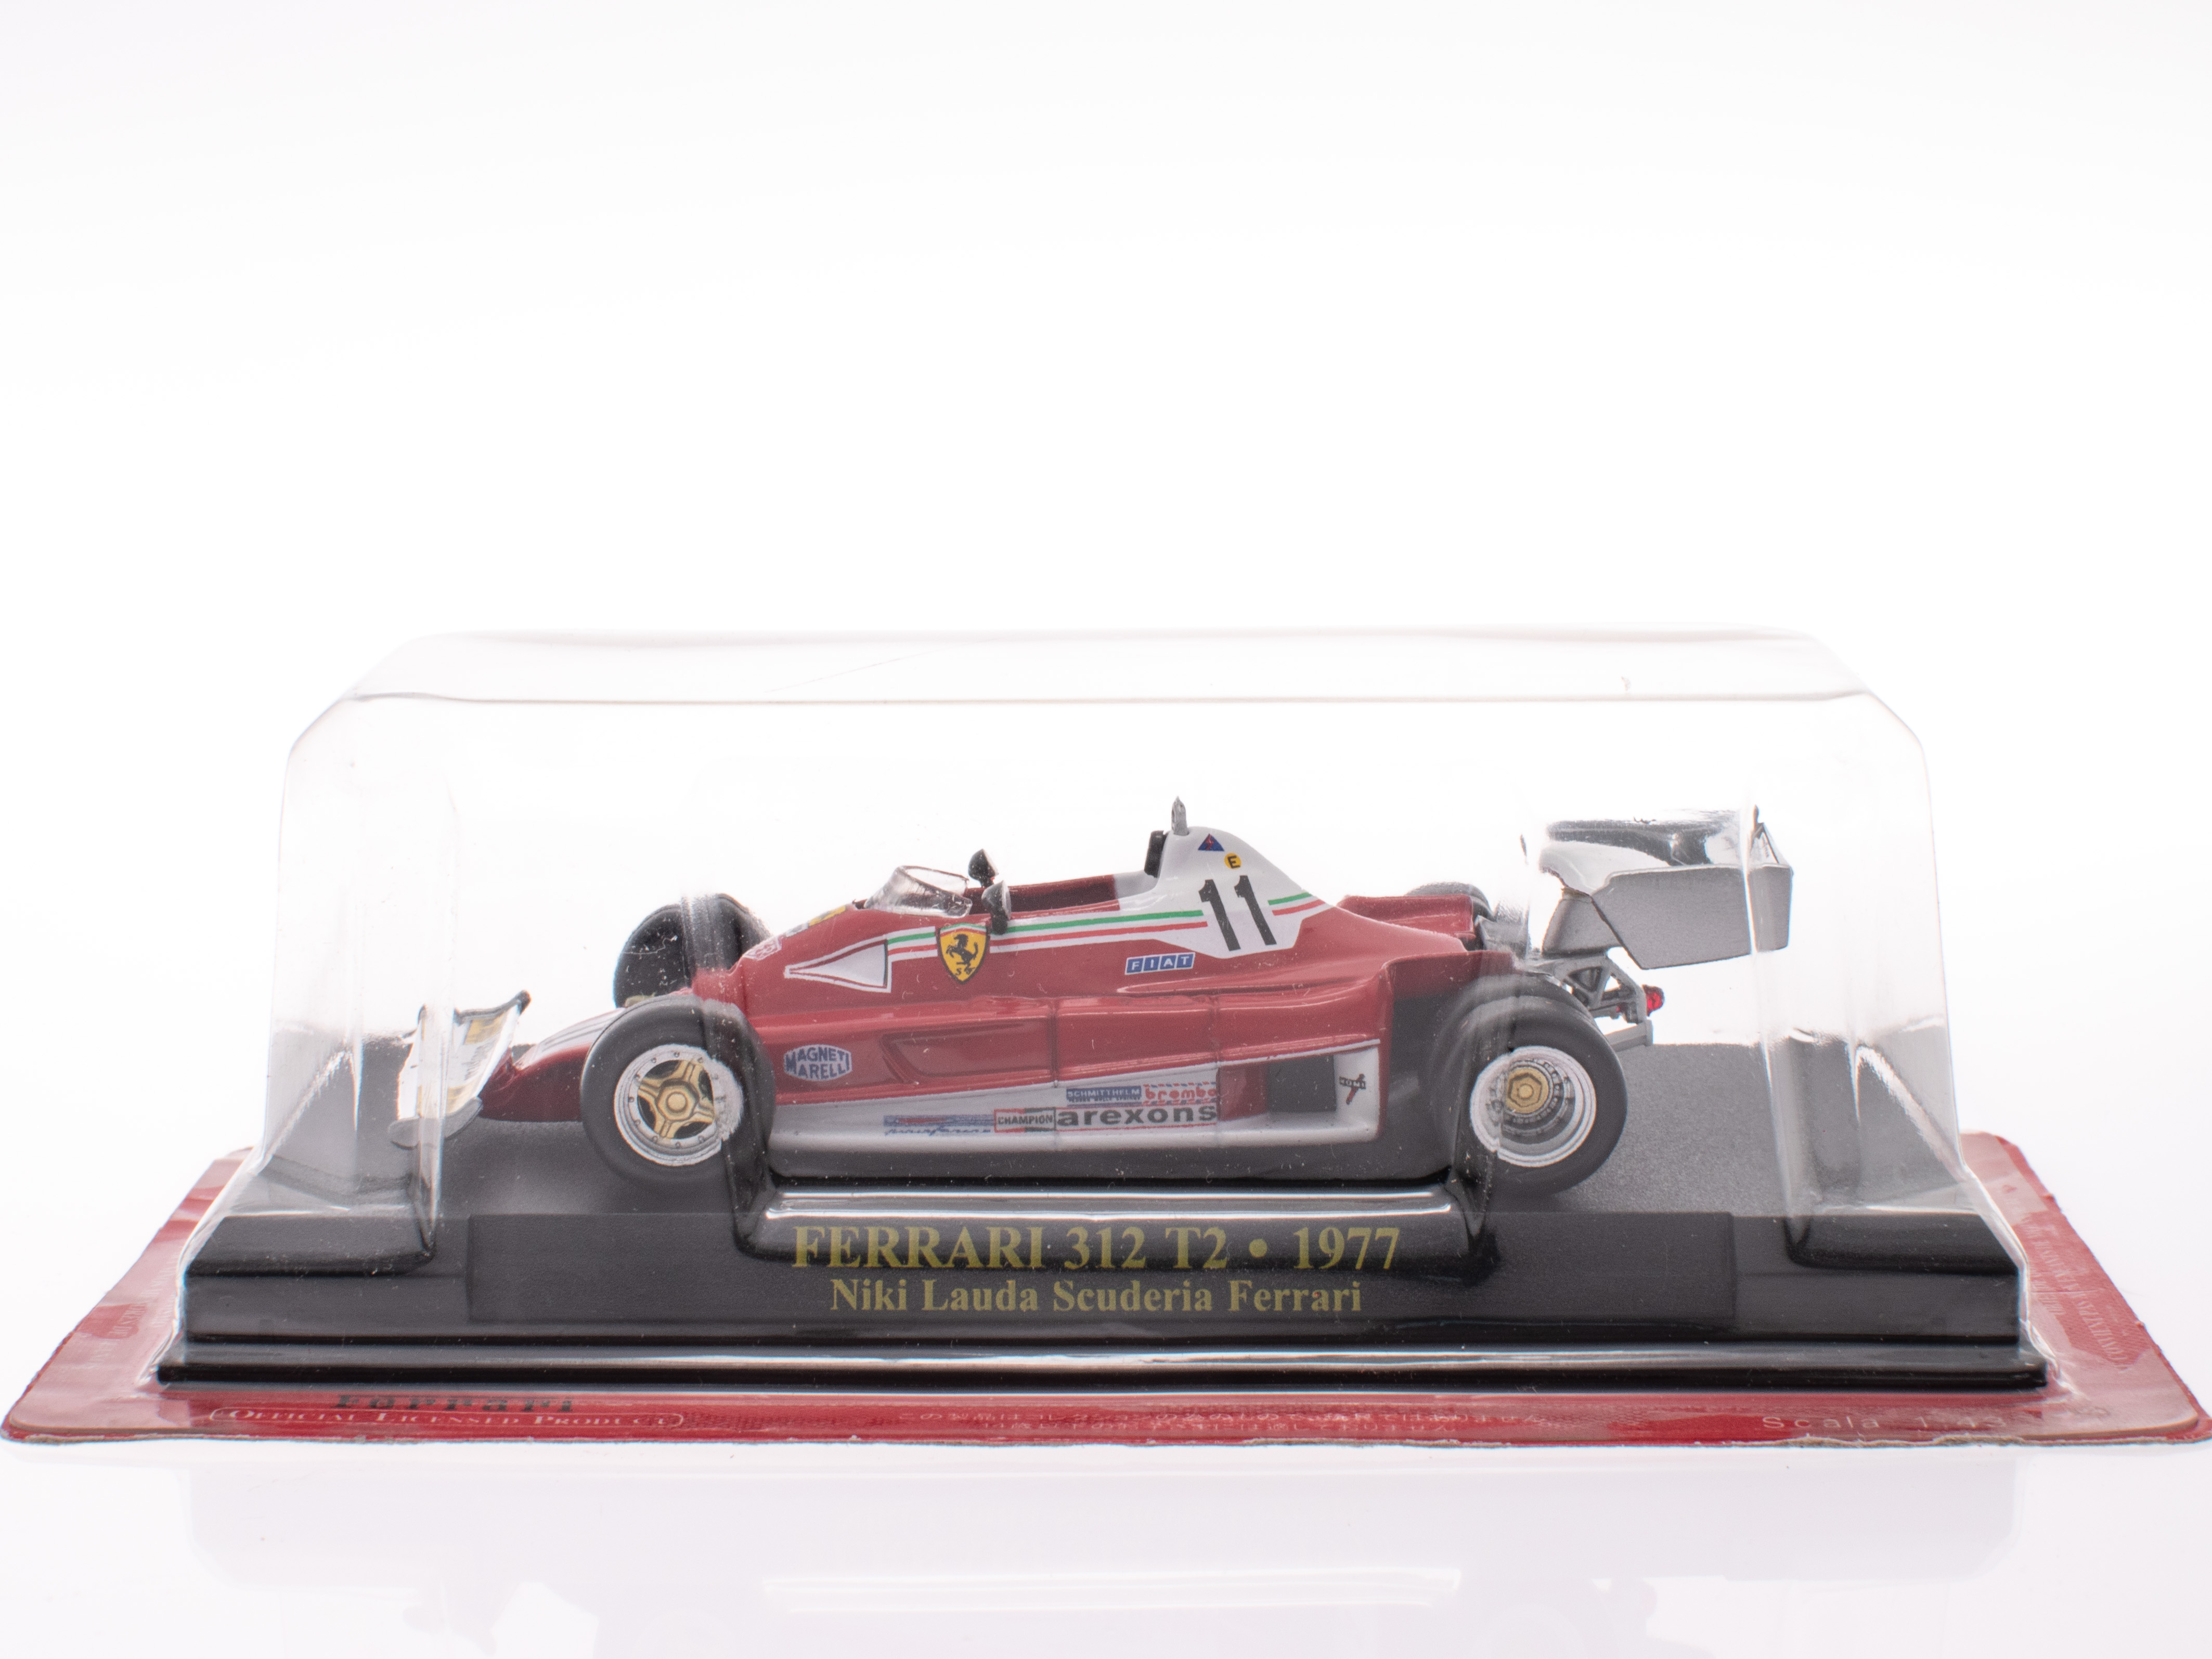 FERRARI 312 T2 - 1977 - Niki Lauda Scuderia Ferrari